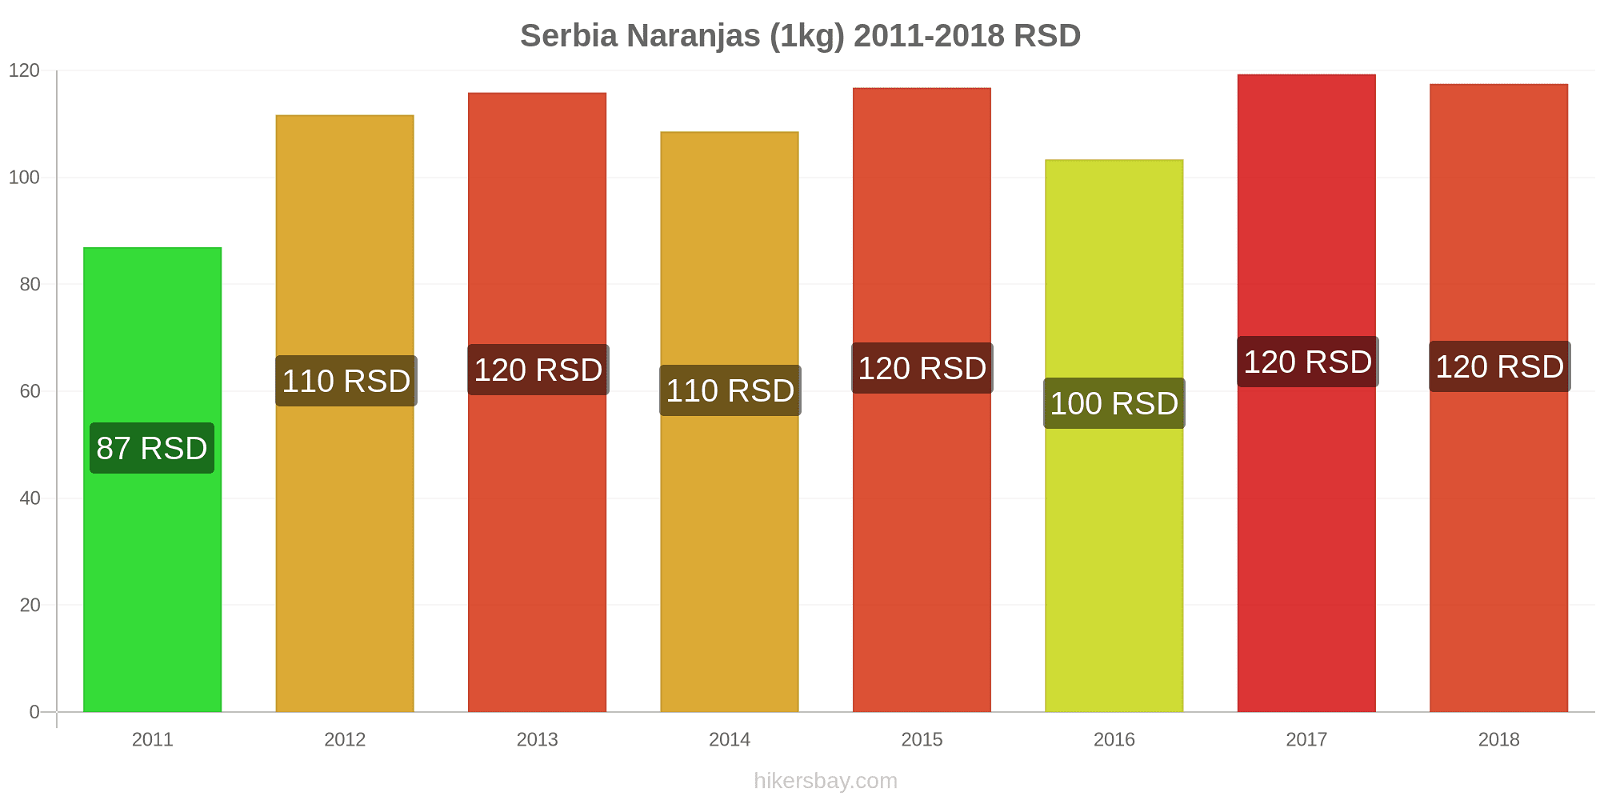 Serbia cambios de precios Naranjas (1kg) hikersbay.com